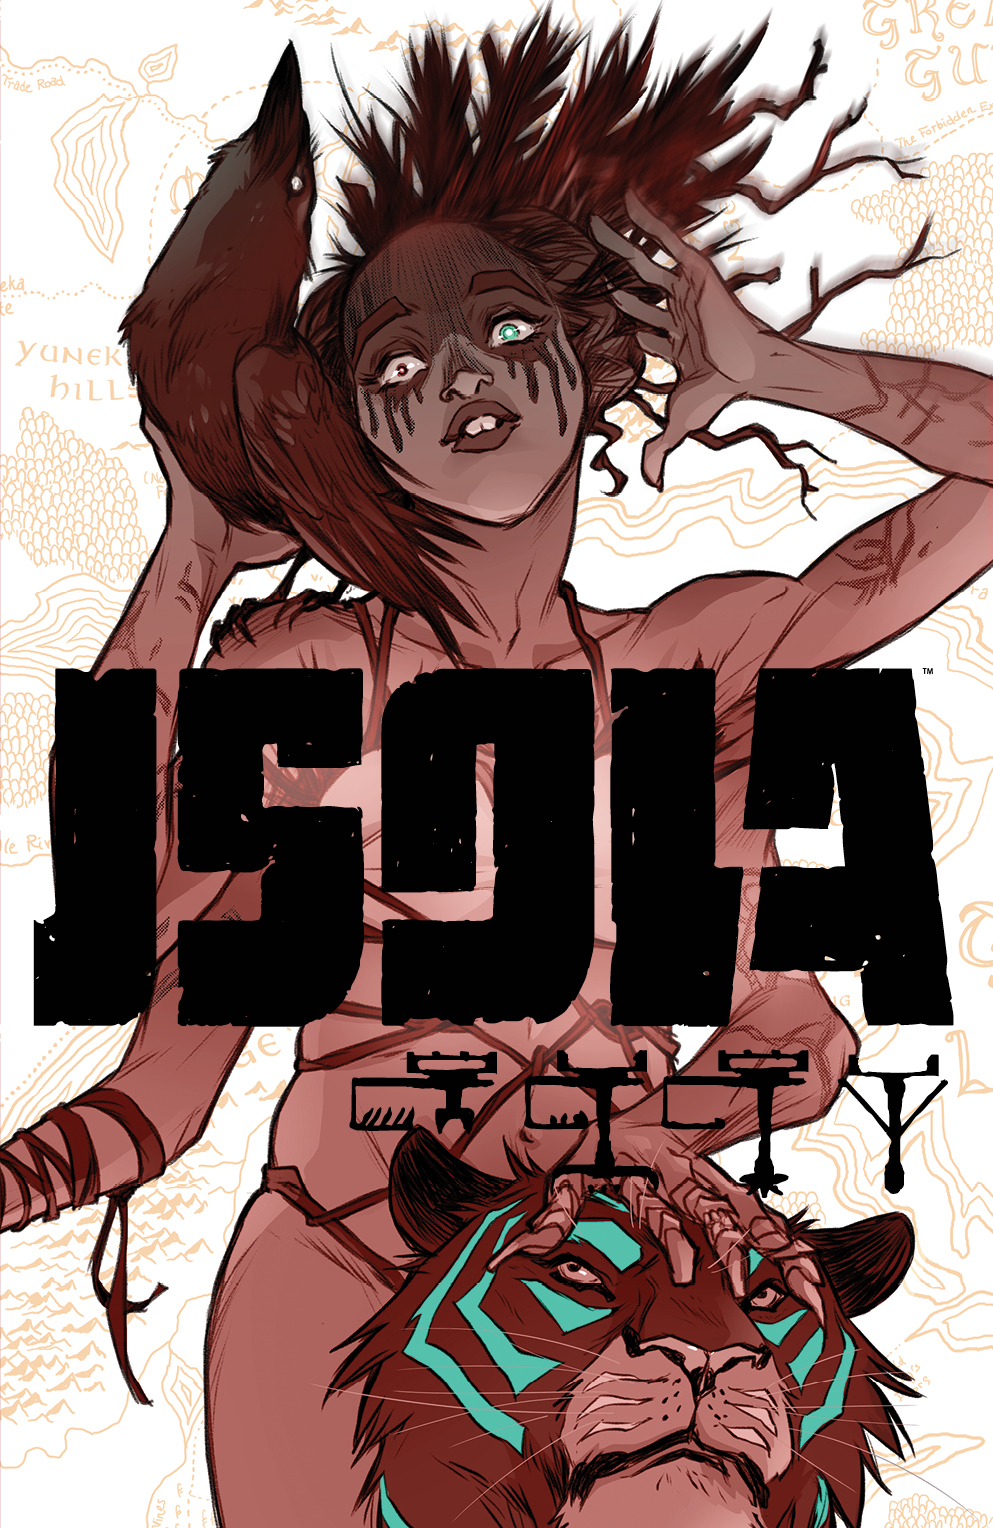 Isola no. 8 (2018 Series)